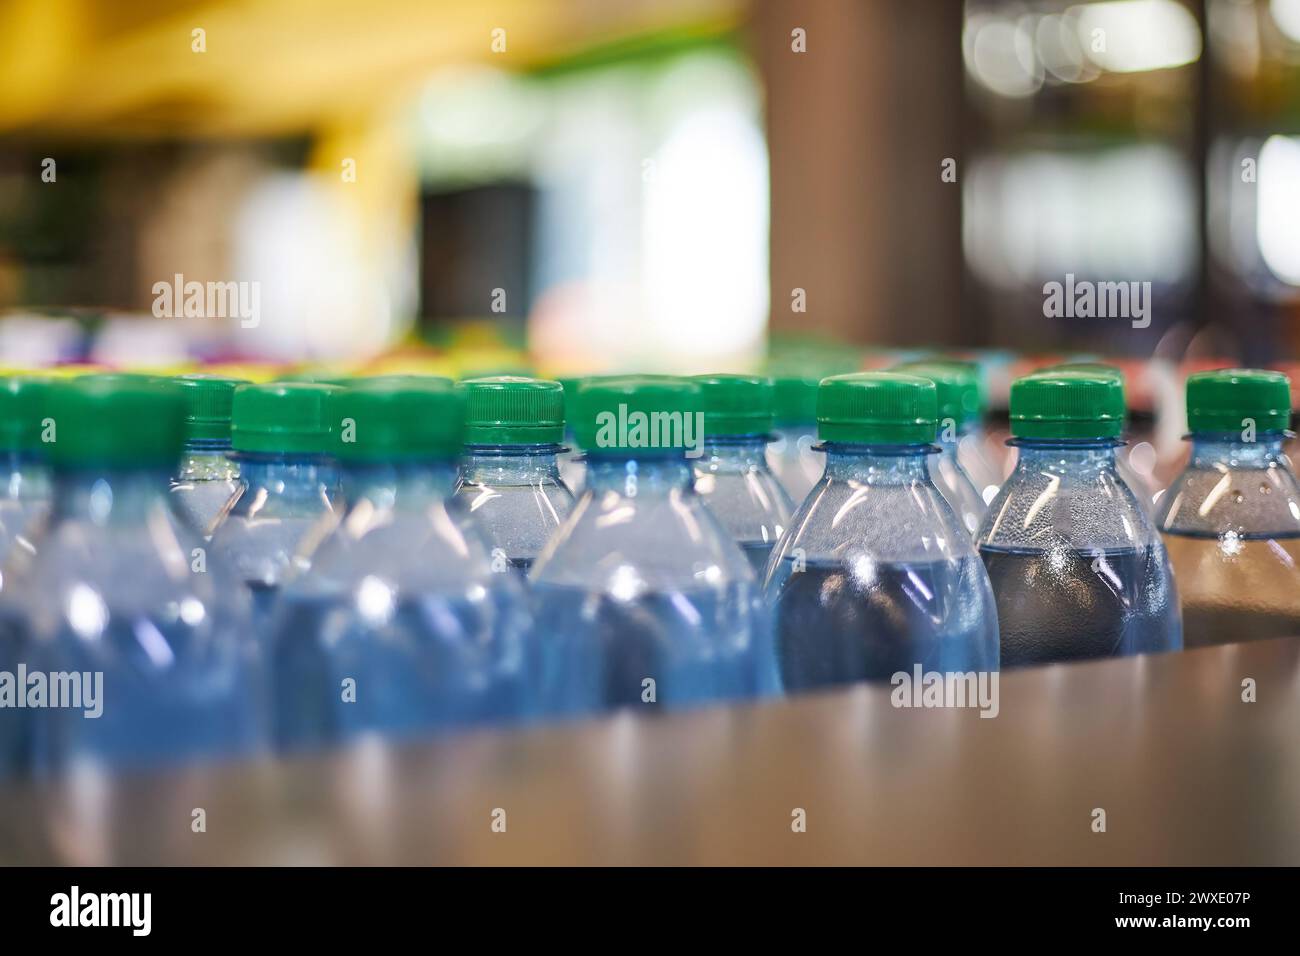 Bouteilles d'eau minérale de petit volume en plastique bleu d'un demi-litre avec bouchon vert en magasin, étagère de supermarché, gros plan. Forte consommation de plastique dans la vie quotidienne, ce qui pollue l'environnement Banque D'Images